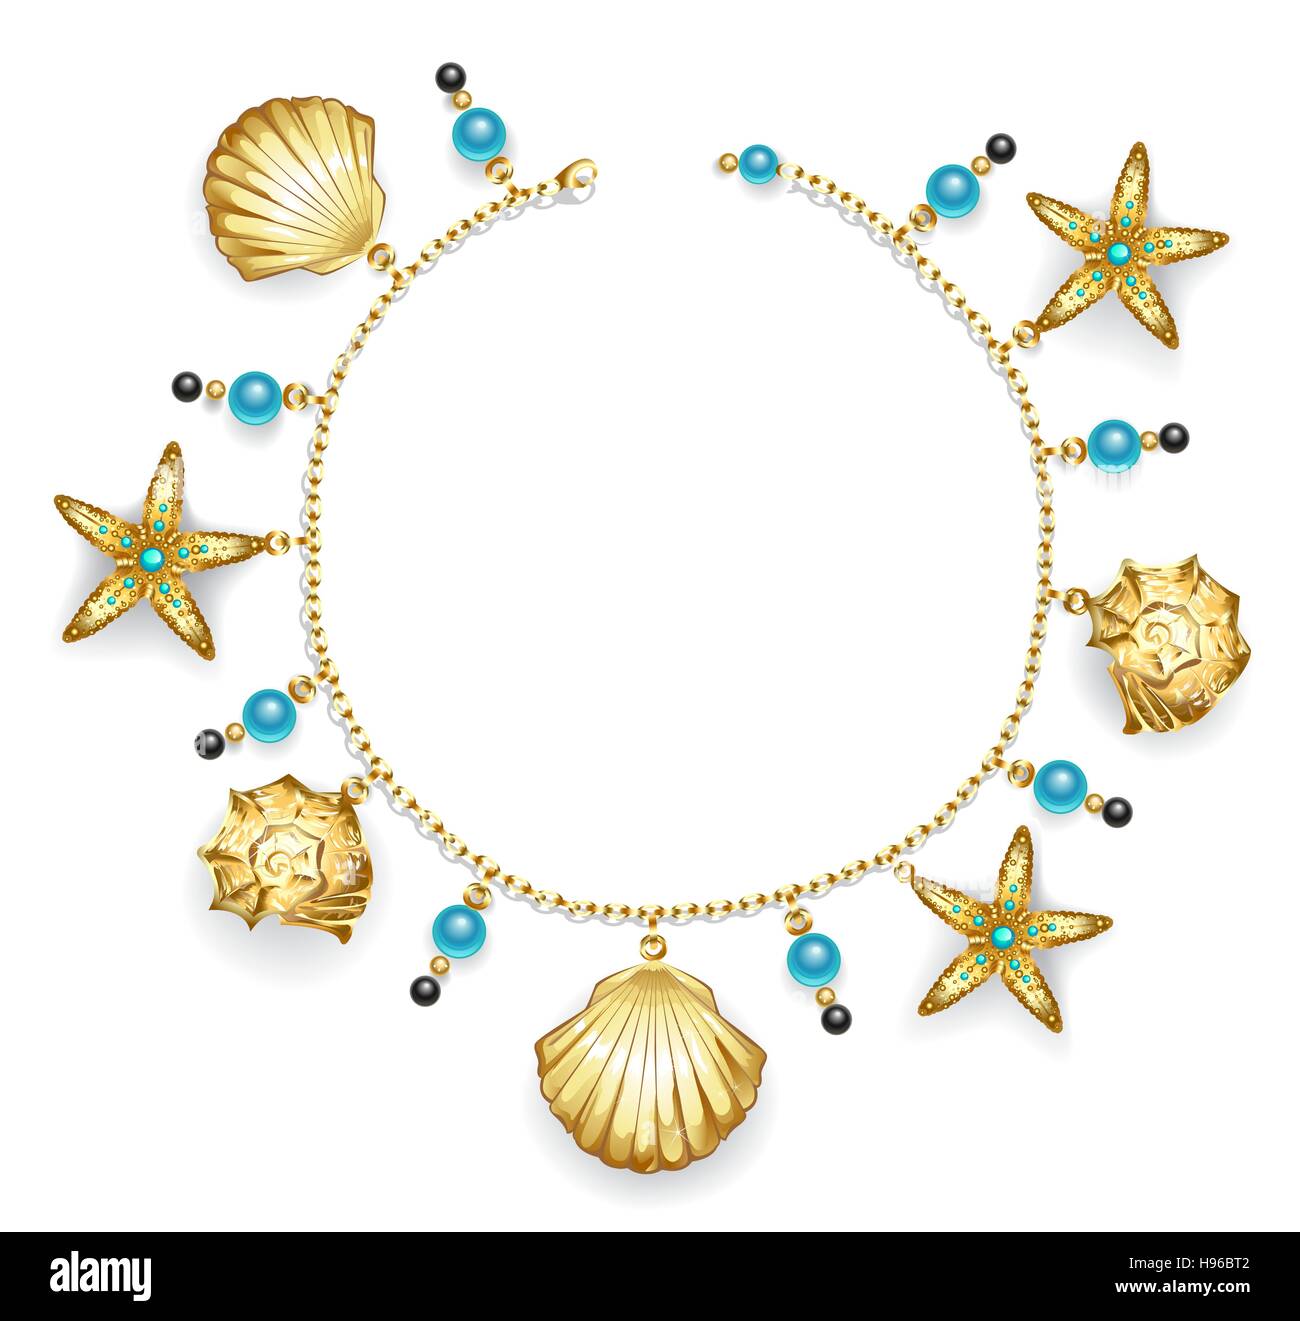 Creare un bracciale di catena in oro decorate con oro conchiglie di mare, stelle marine e perle di turchese. Illustrazione Vettoriale